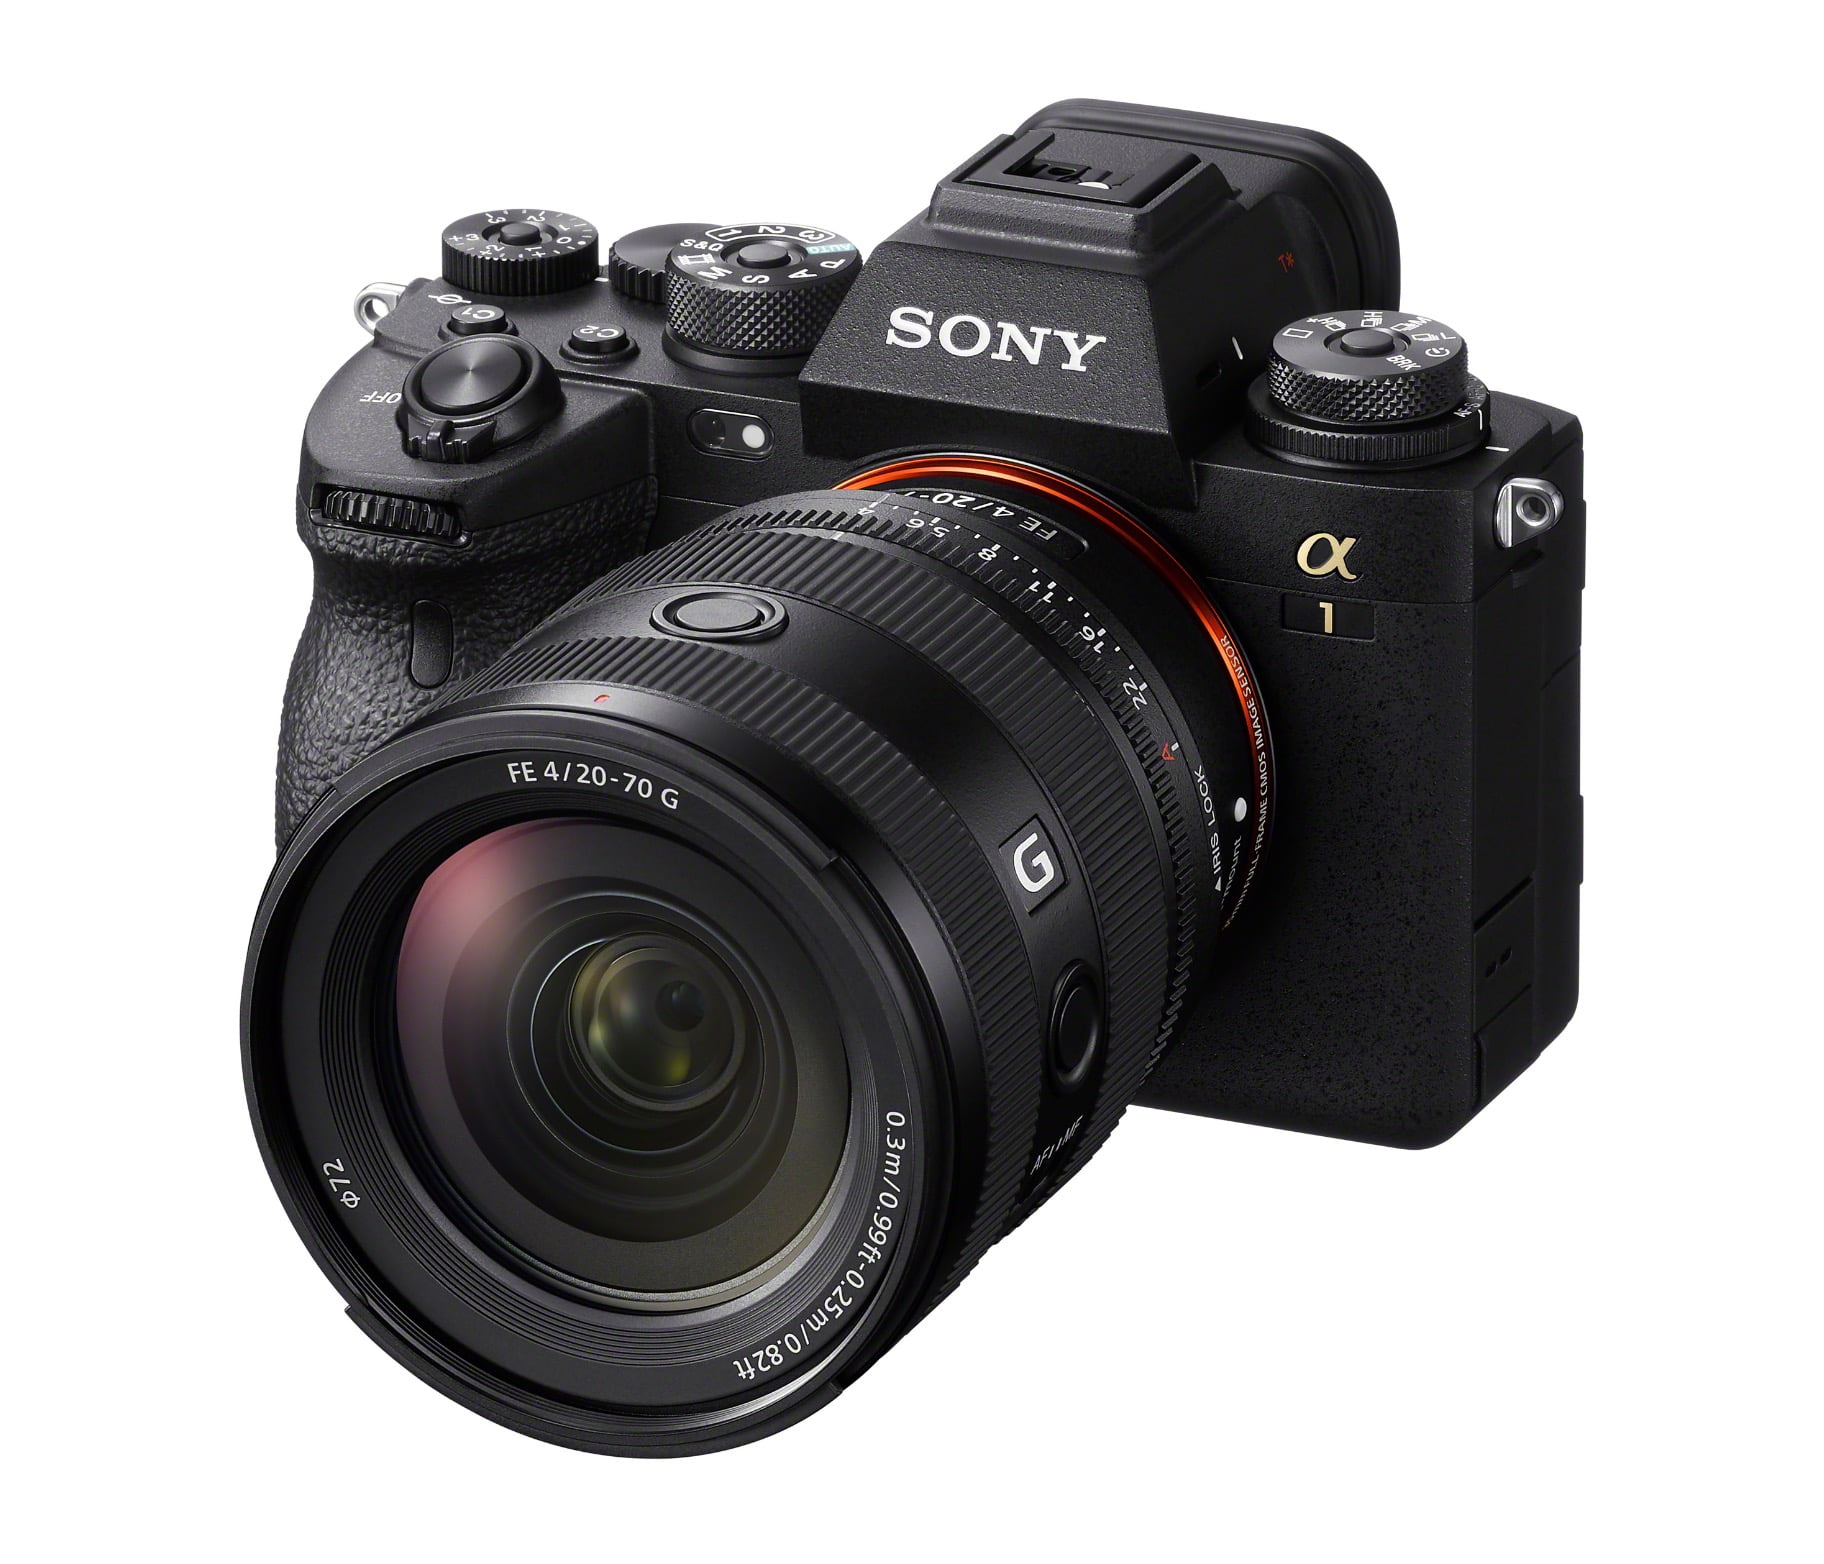 Sony ra mắt ống kính FE 20-70mm F4 G, ống kính góc siêu rộng kết hợp zoom chất lượng cho các máy ảnh